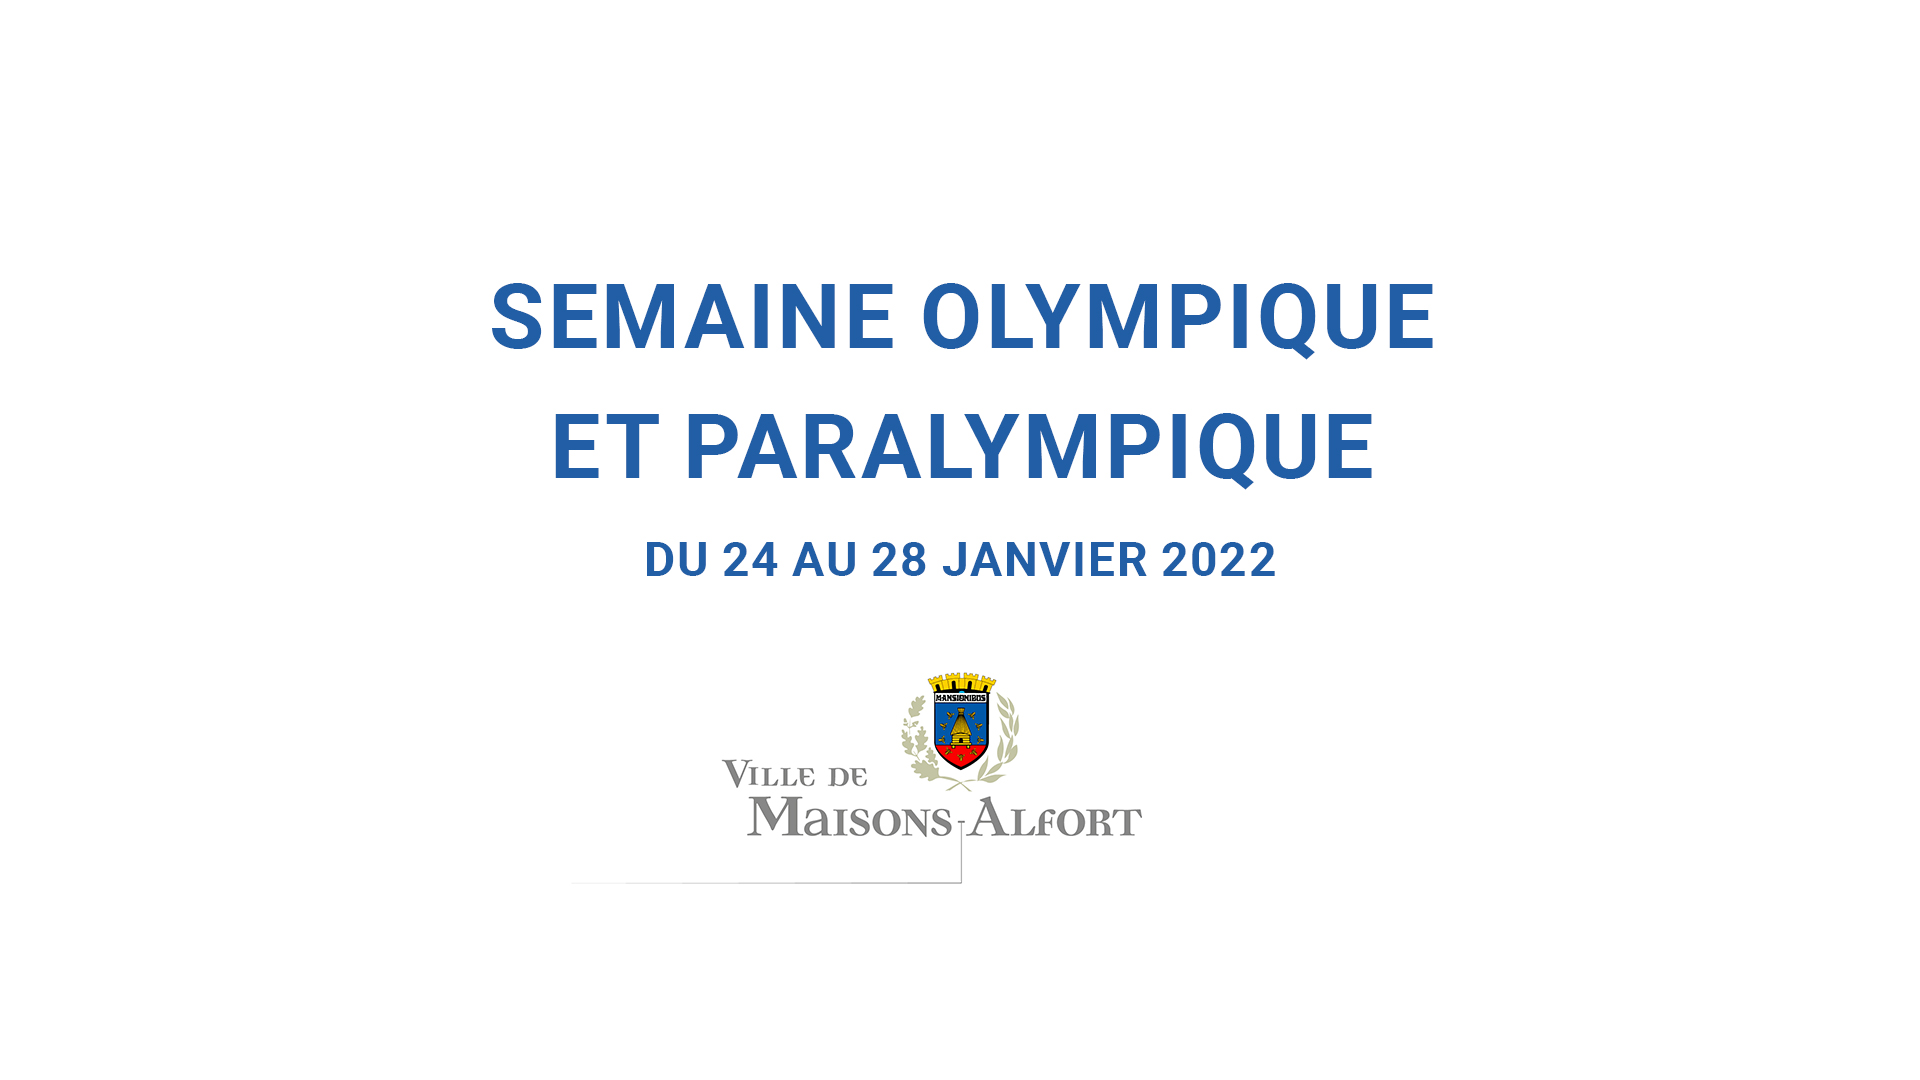 Semaine olympique et paralympique 2022